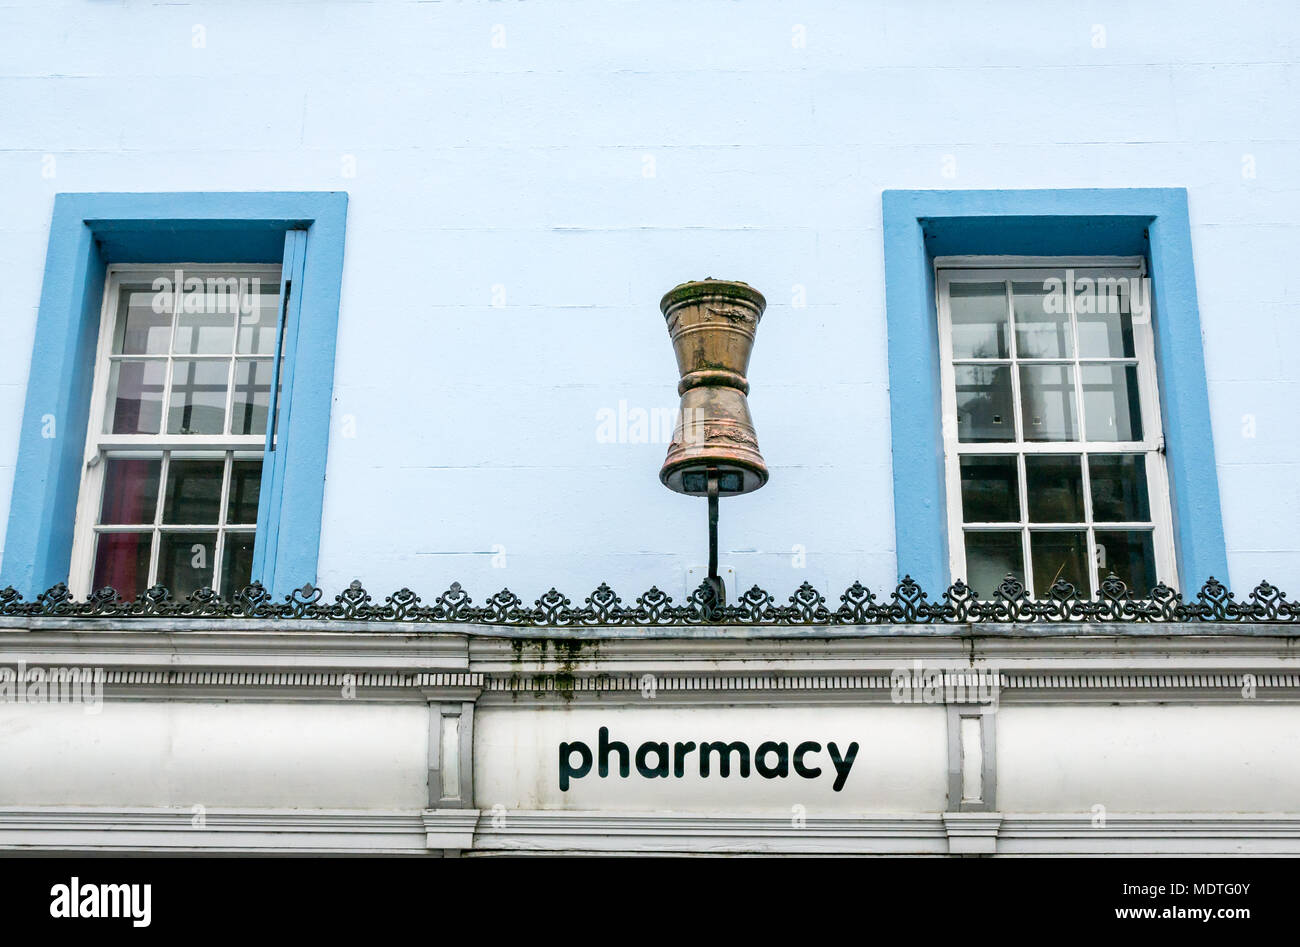 In vecchio stile speziale segno di oro sopra malta pharmacy shop porta contro una parete blu e windows, High Street Haddington, Scotland, Regno Unito Foto Stock